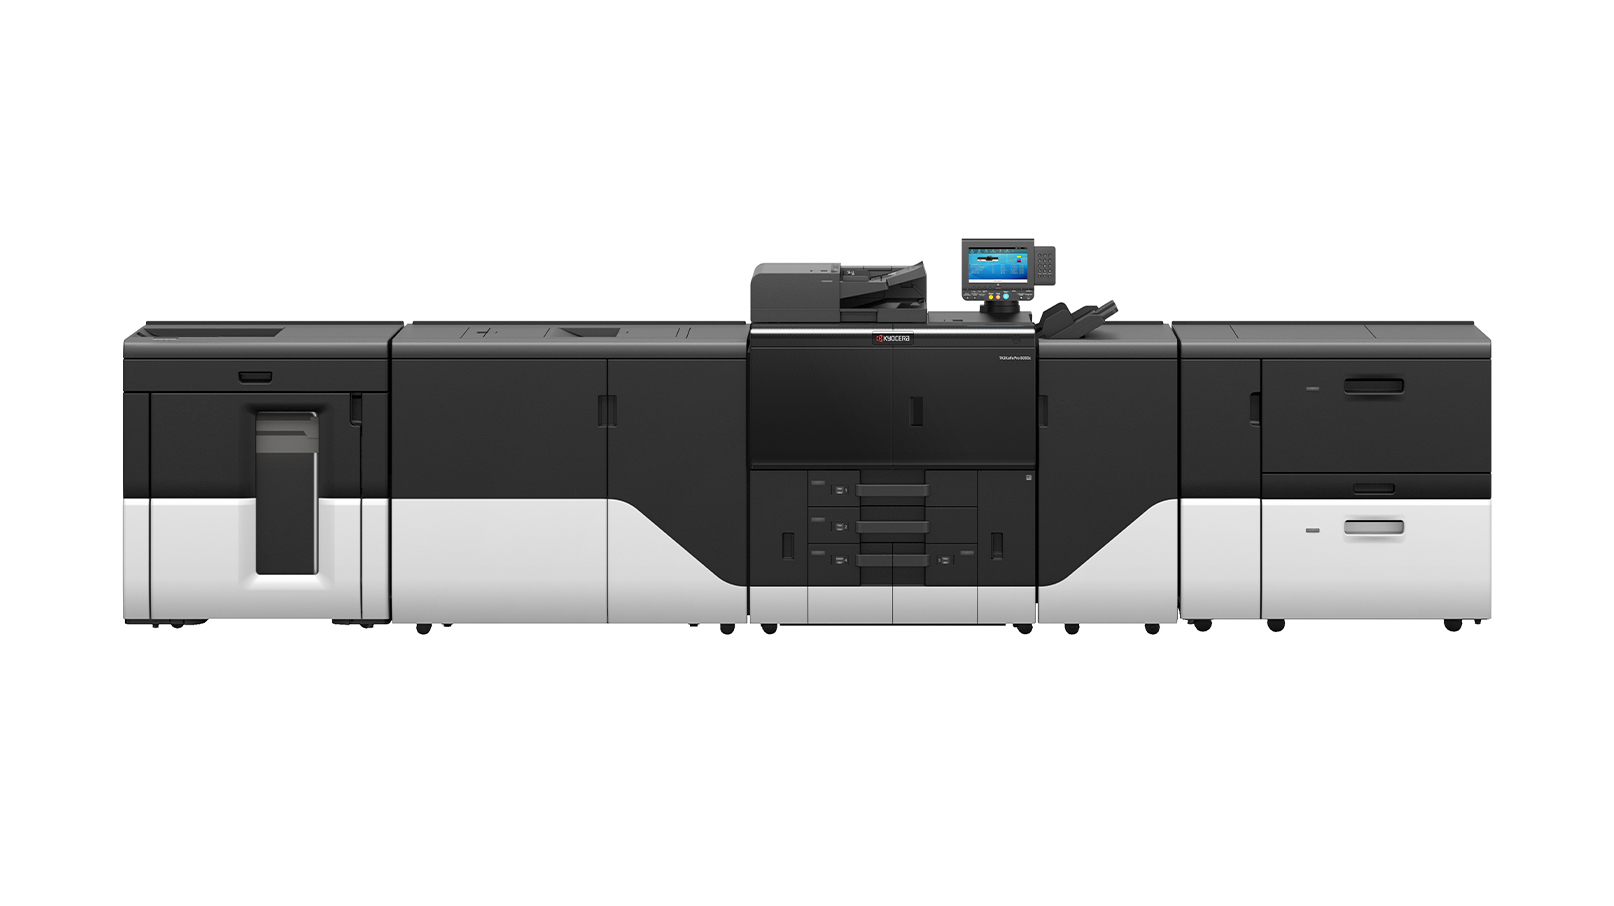 TASKalfa pro 15000c Printing Service Provider Model1